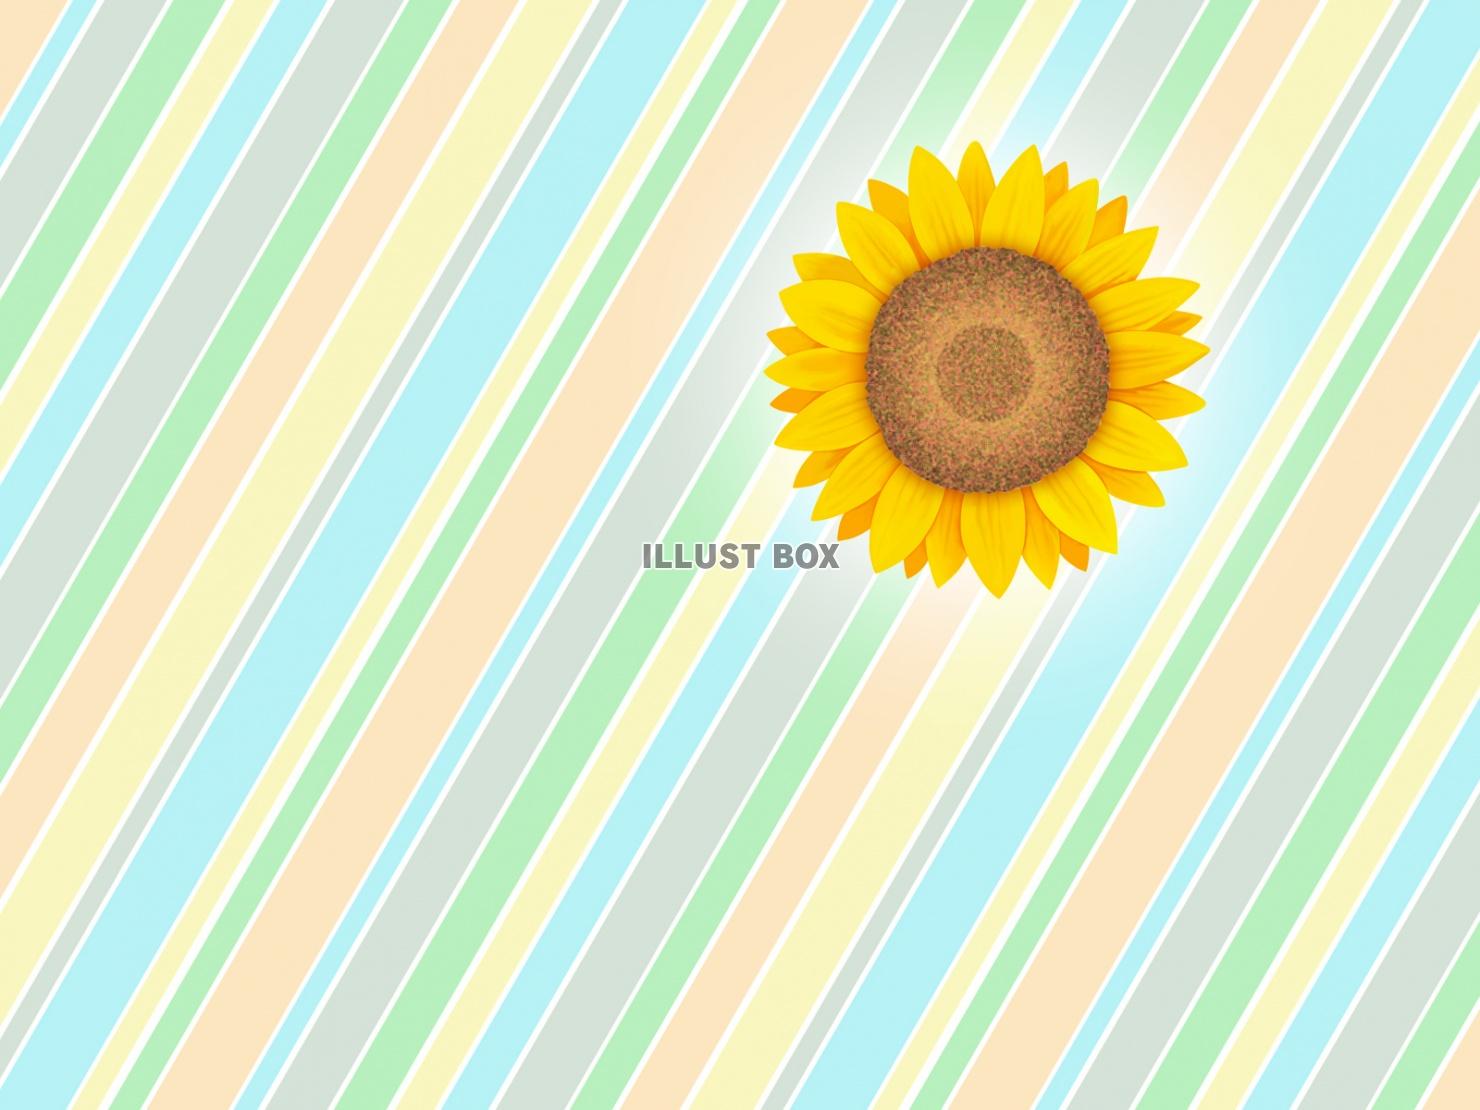 無料イラスト 向日葵の花柄と縞模様の壁紙シンプル背景素材イラスト